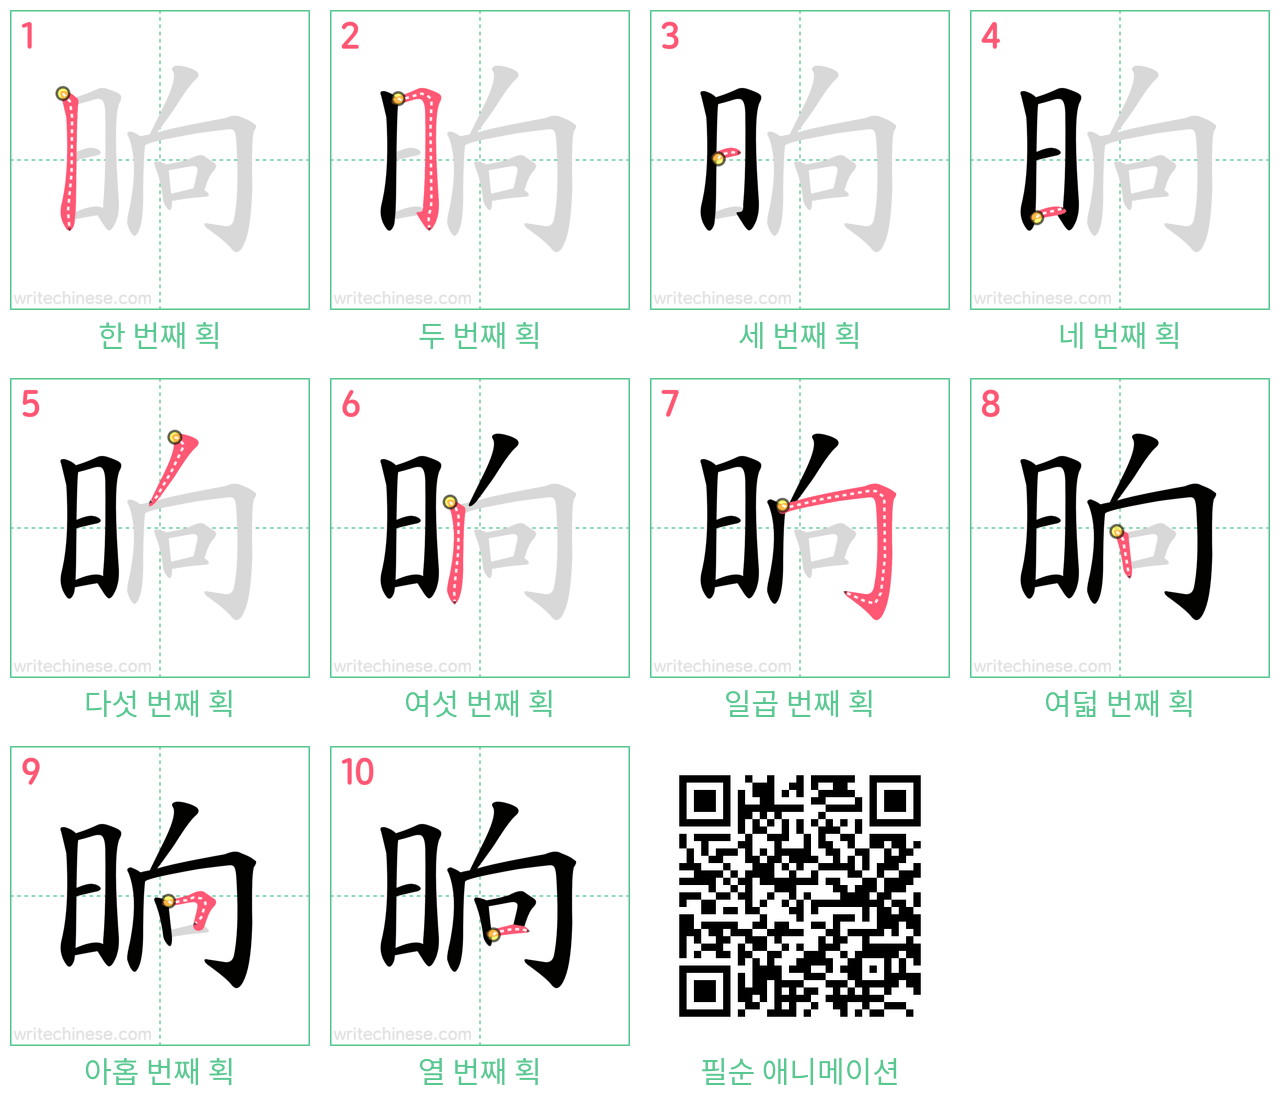 晌 step-by-step stroke order diagrams